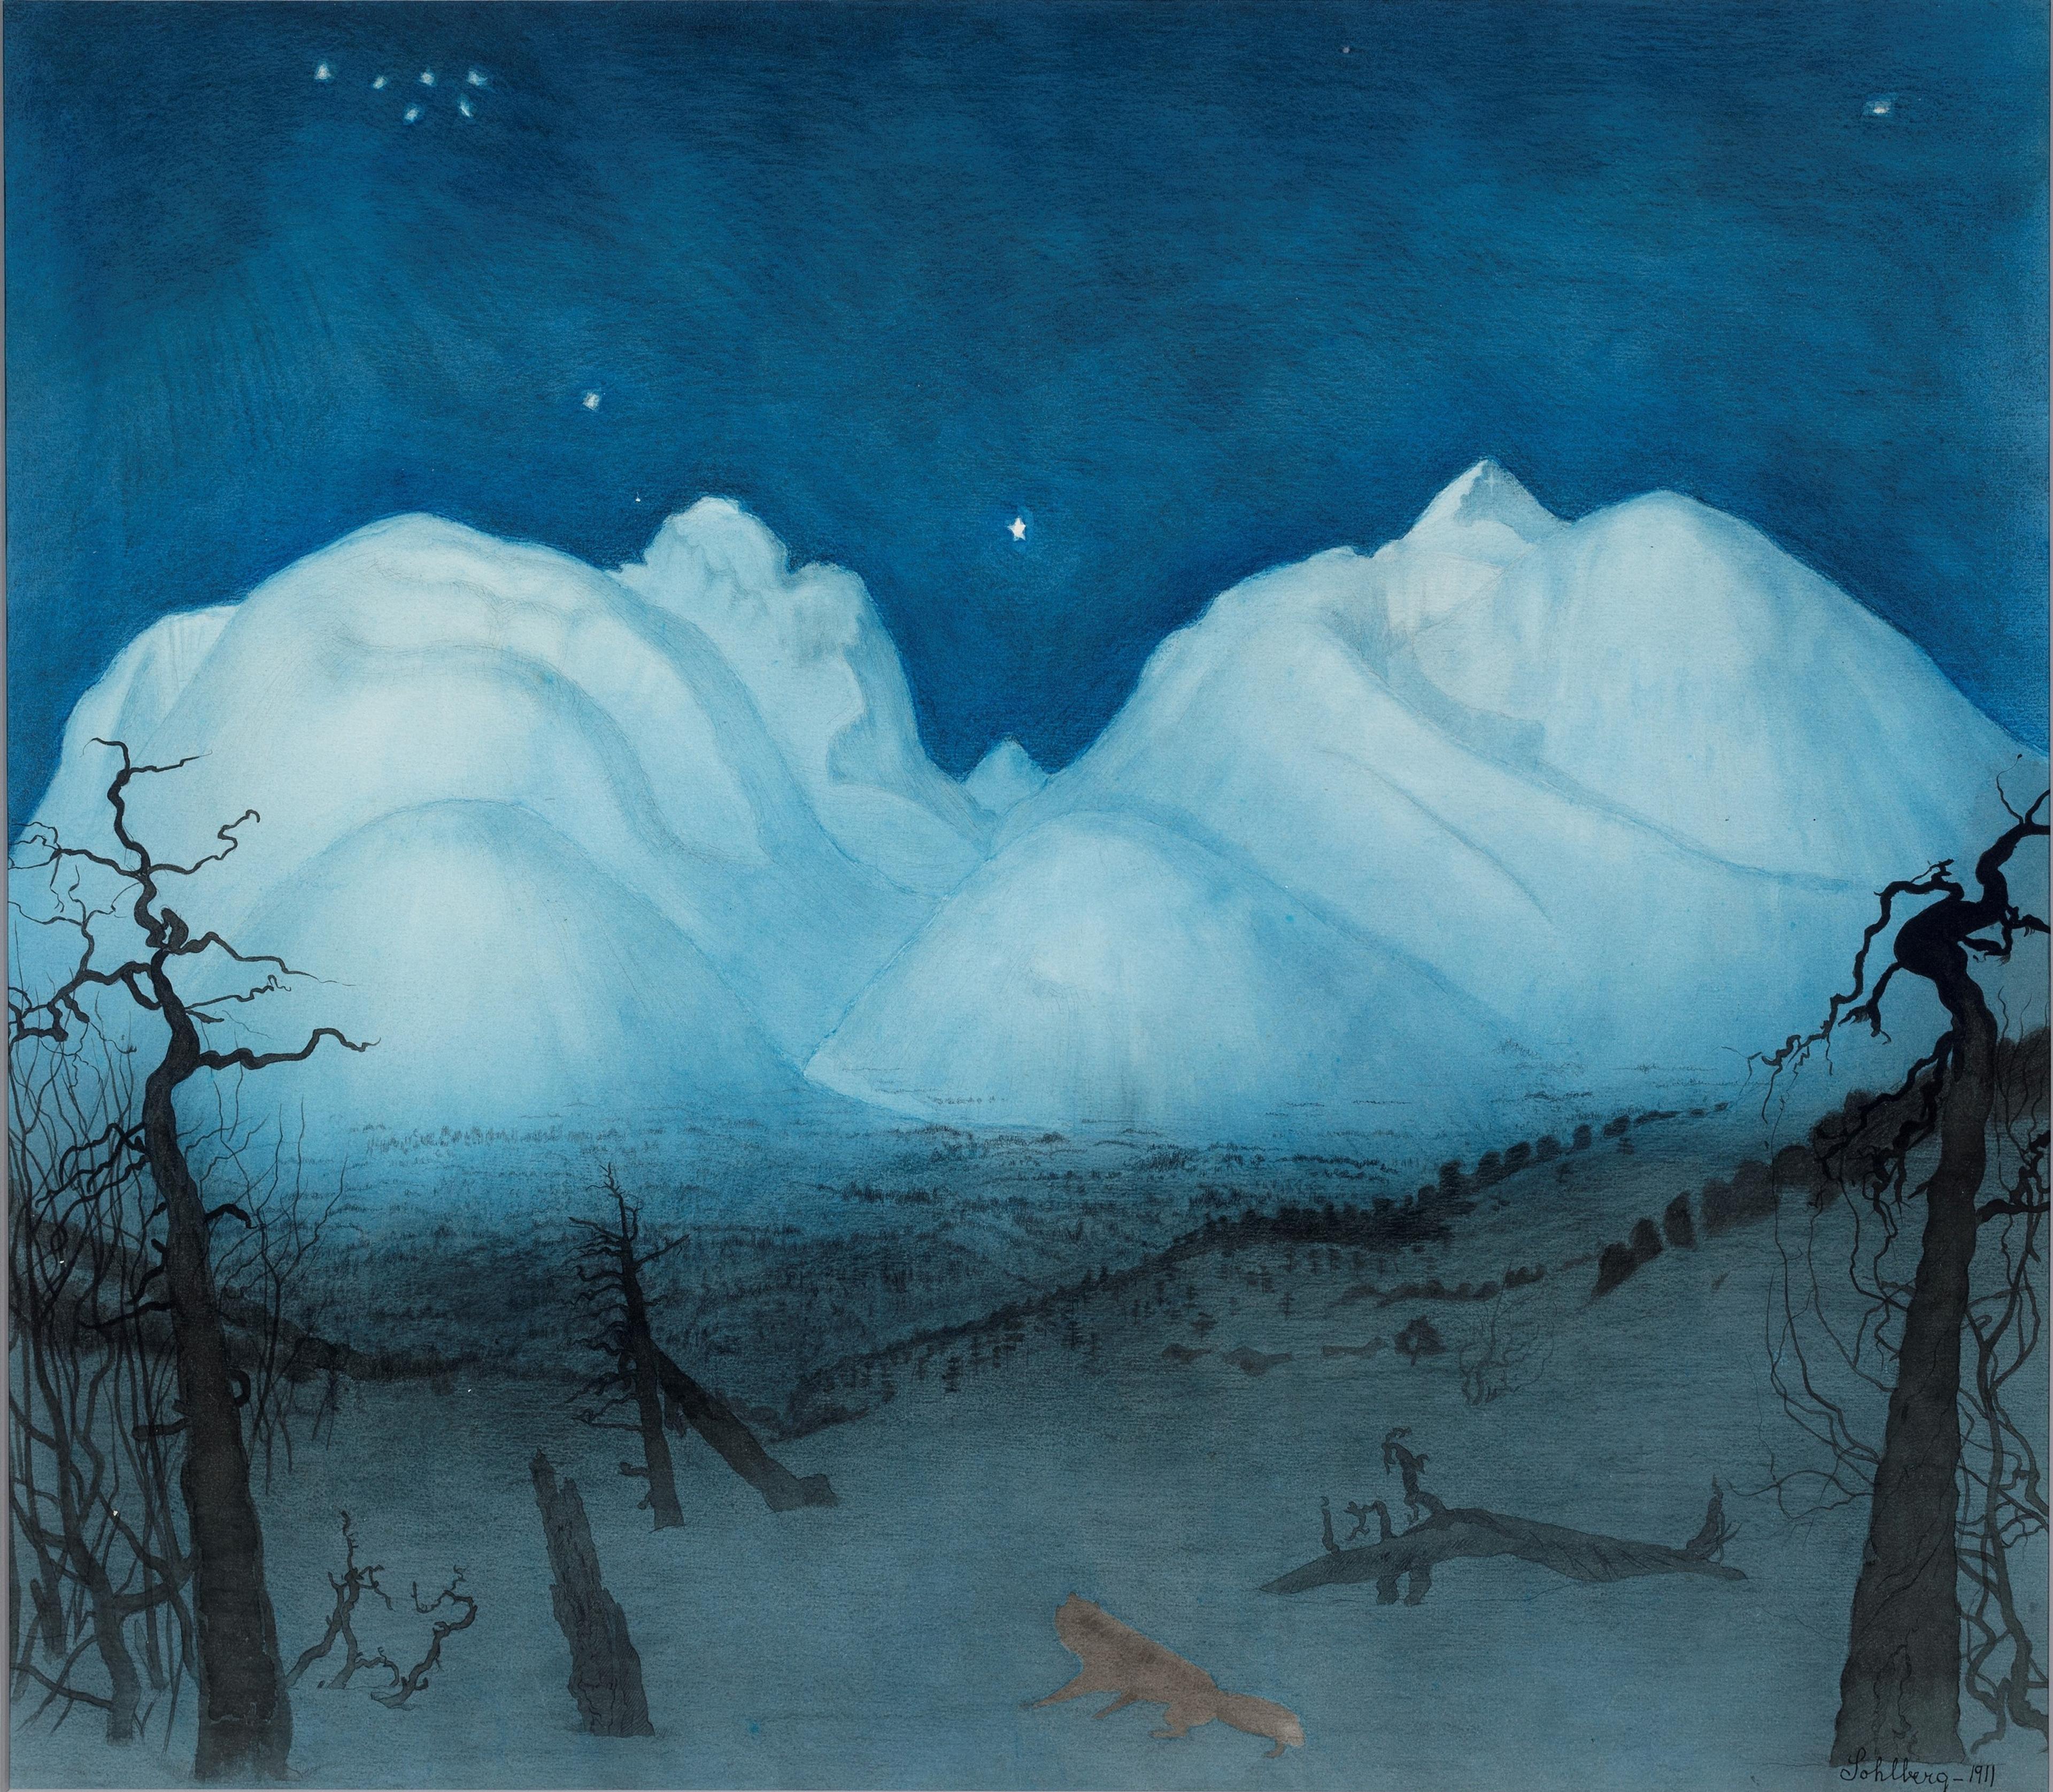 Maleri av fjell i isblå toner, med en mørk blå himmel med stjerner